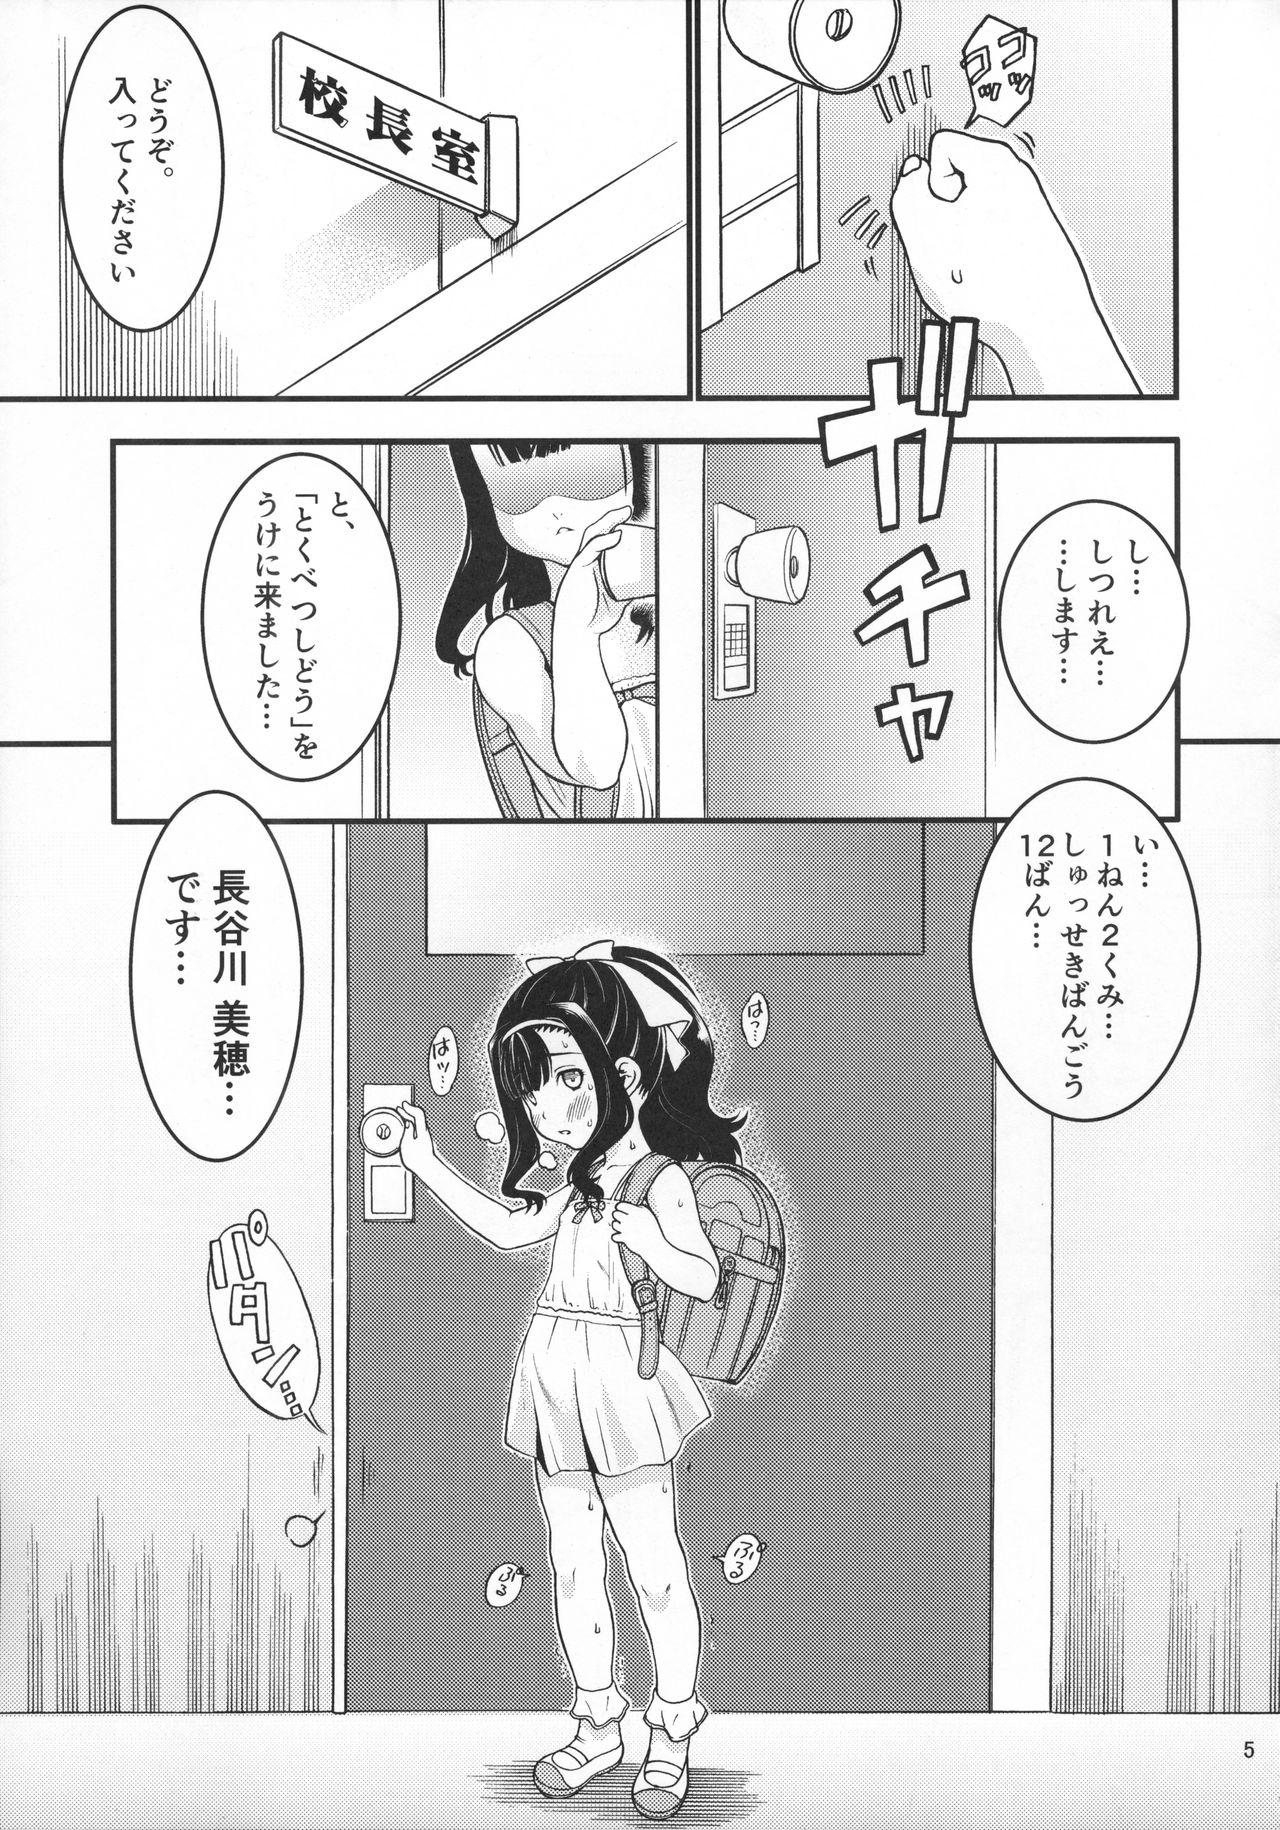 Tongue Heisei 29-nendo Tokushu Ginou Yuushuu Seito Shidou Youkou  - Page 7